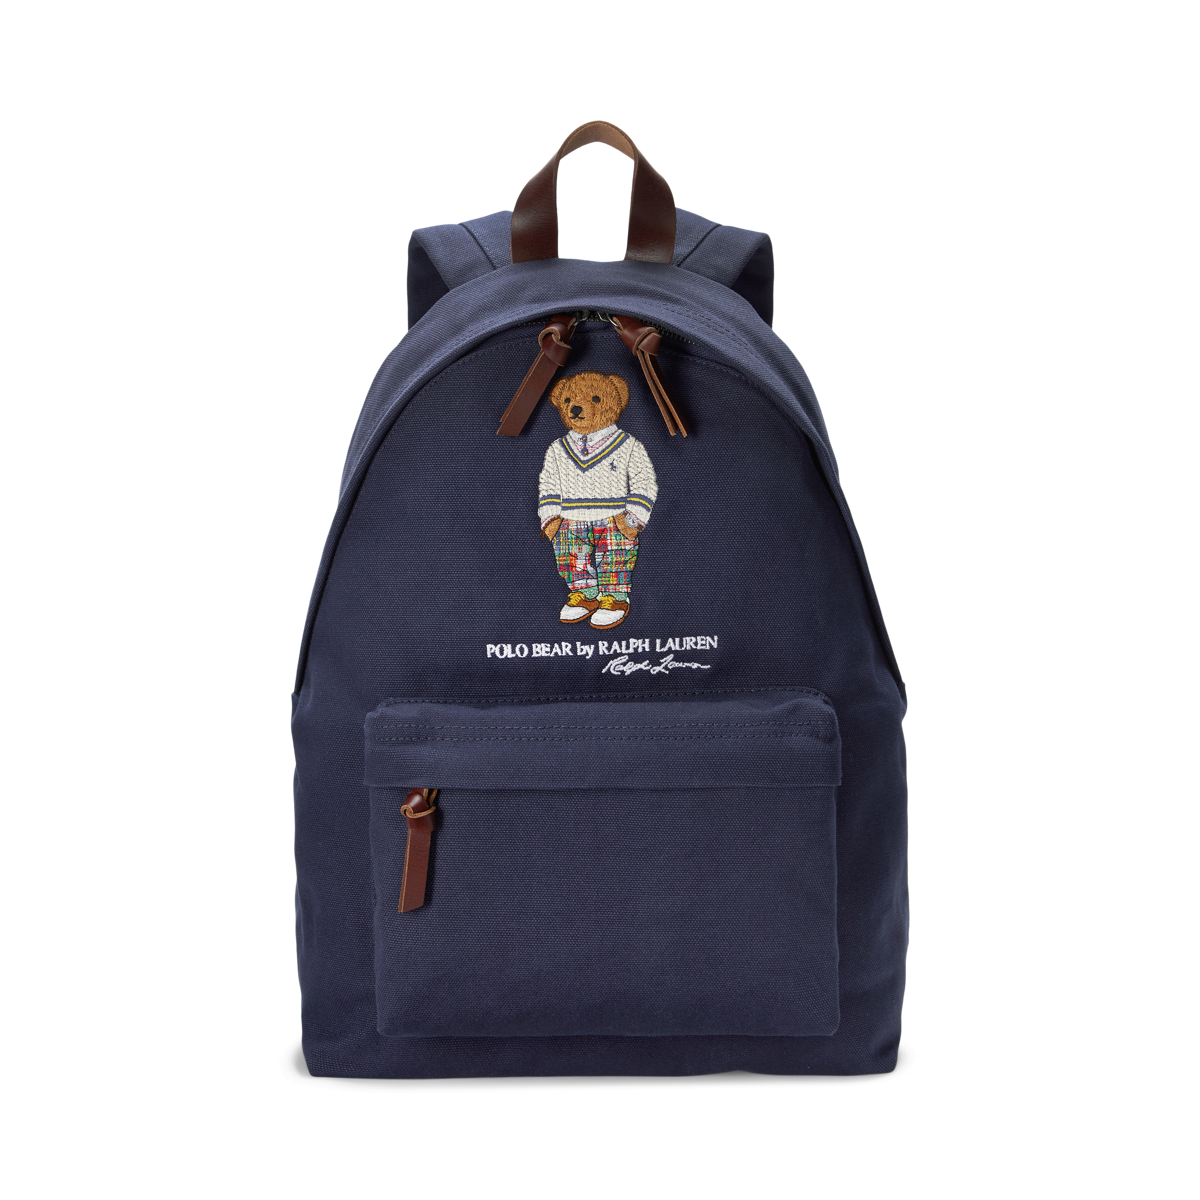 Polo Bear Canvas Backpack | Ralph Lauren